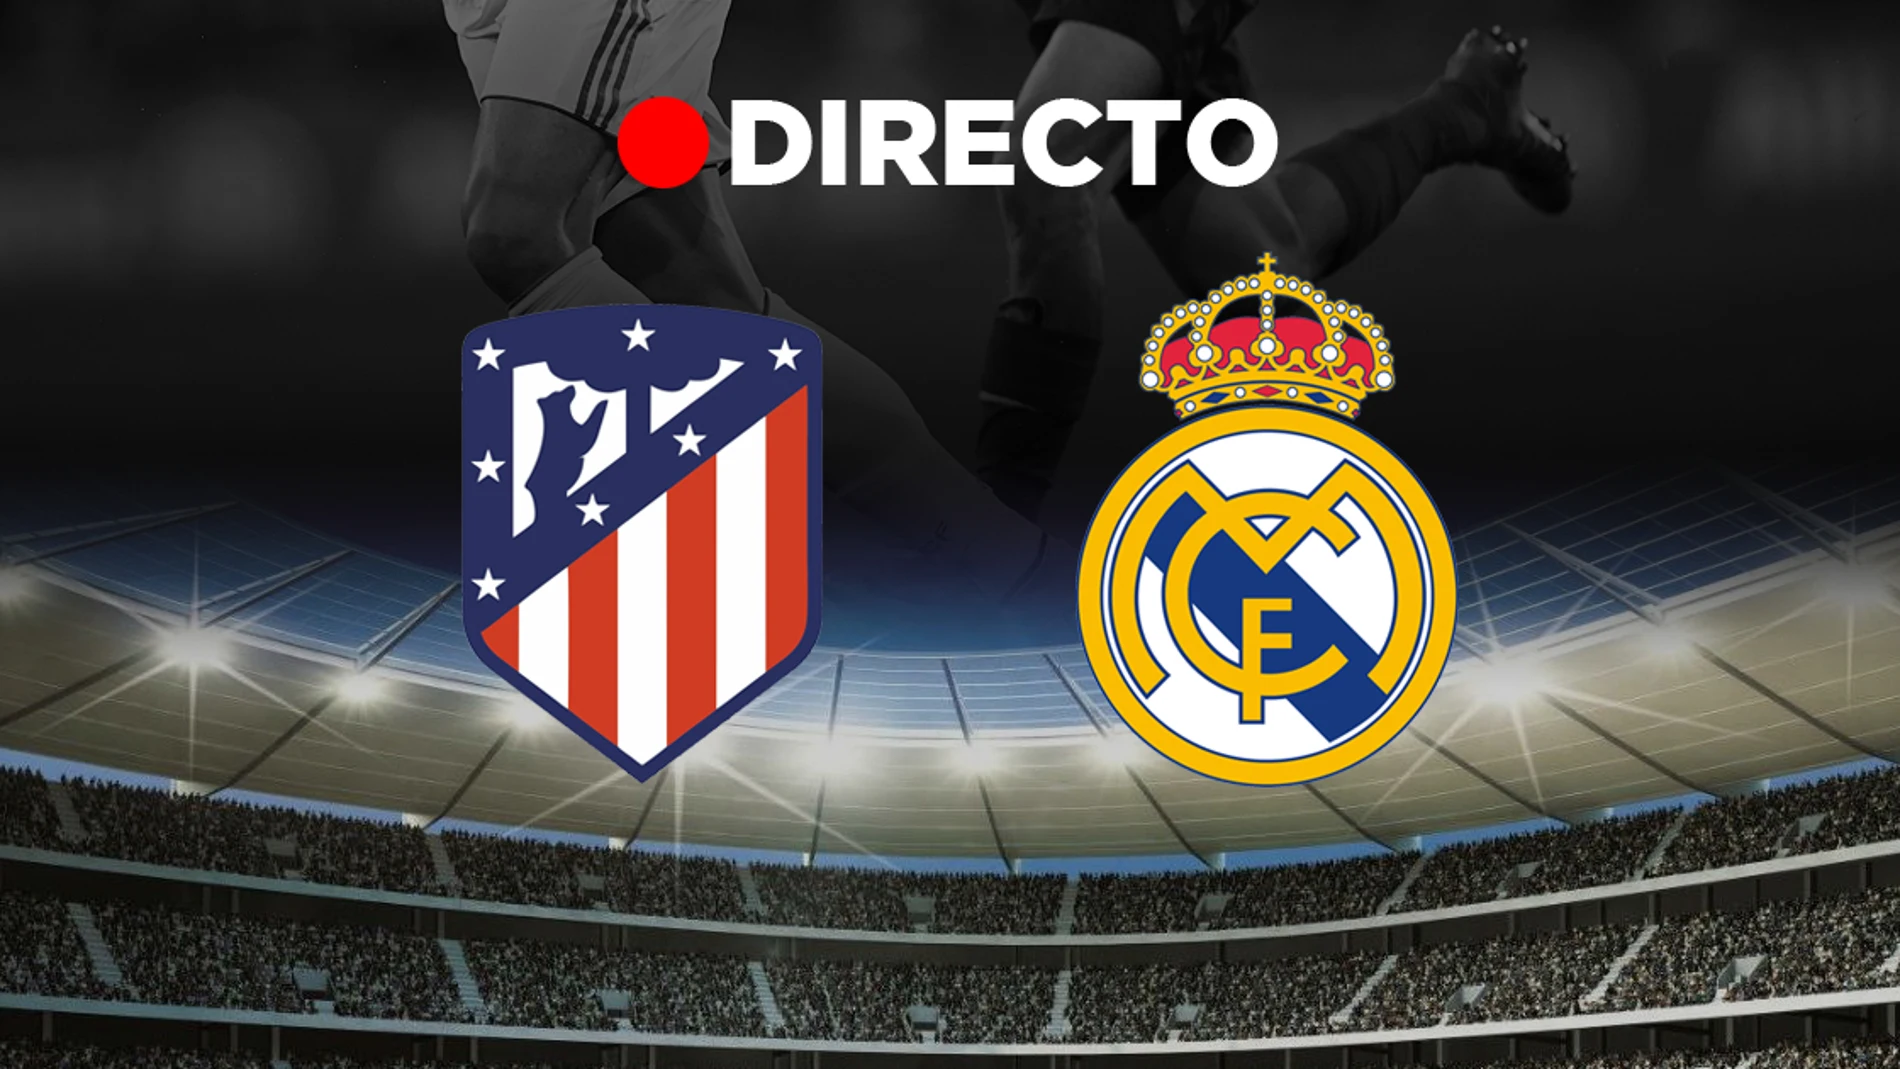 Atlético Madrid - Real Madrid: Partido de fútbol de Liga, y resultado del derbi directo